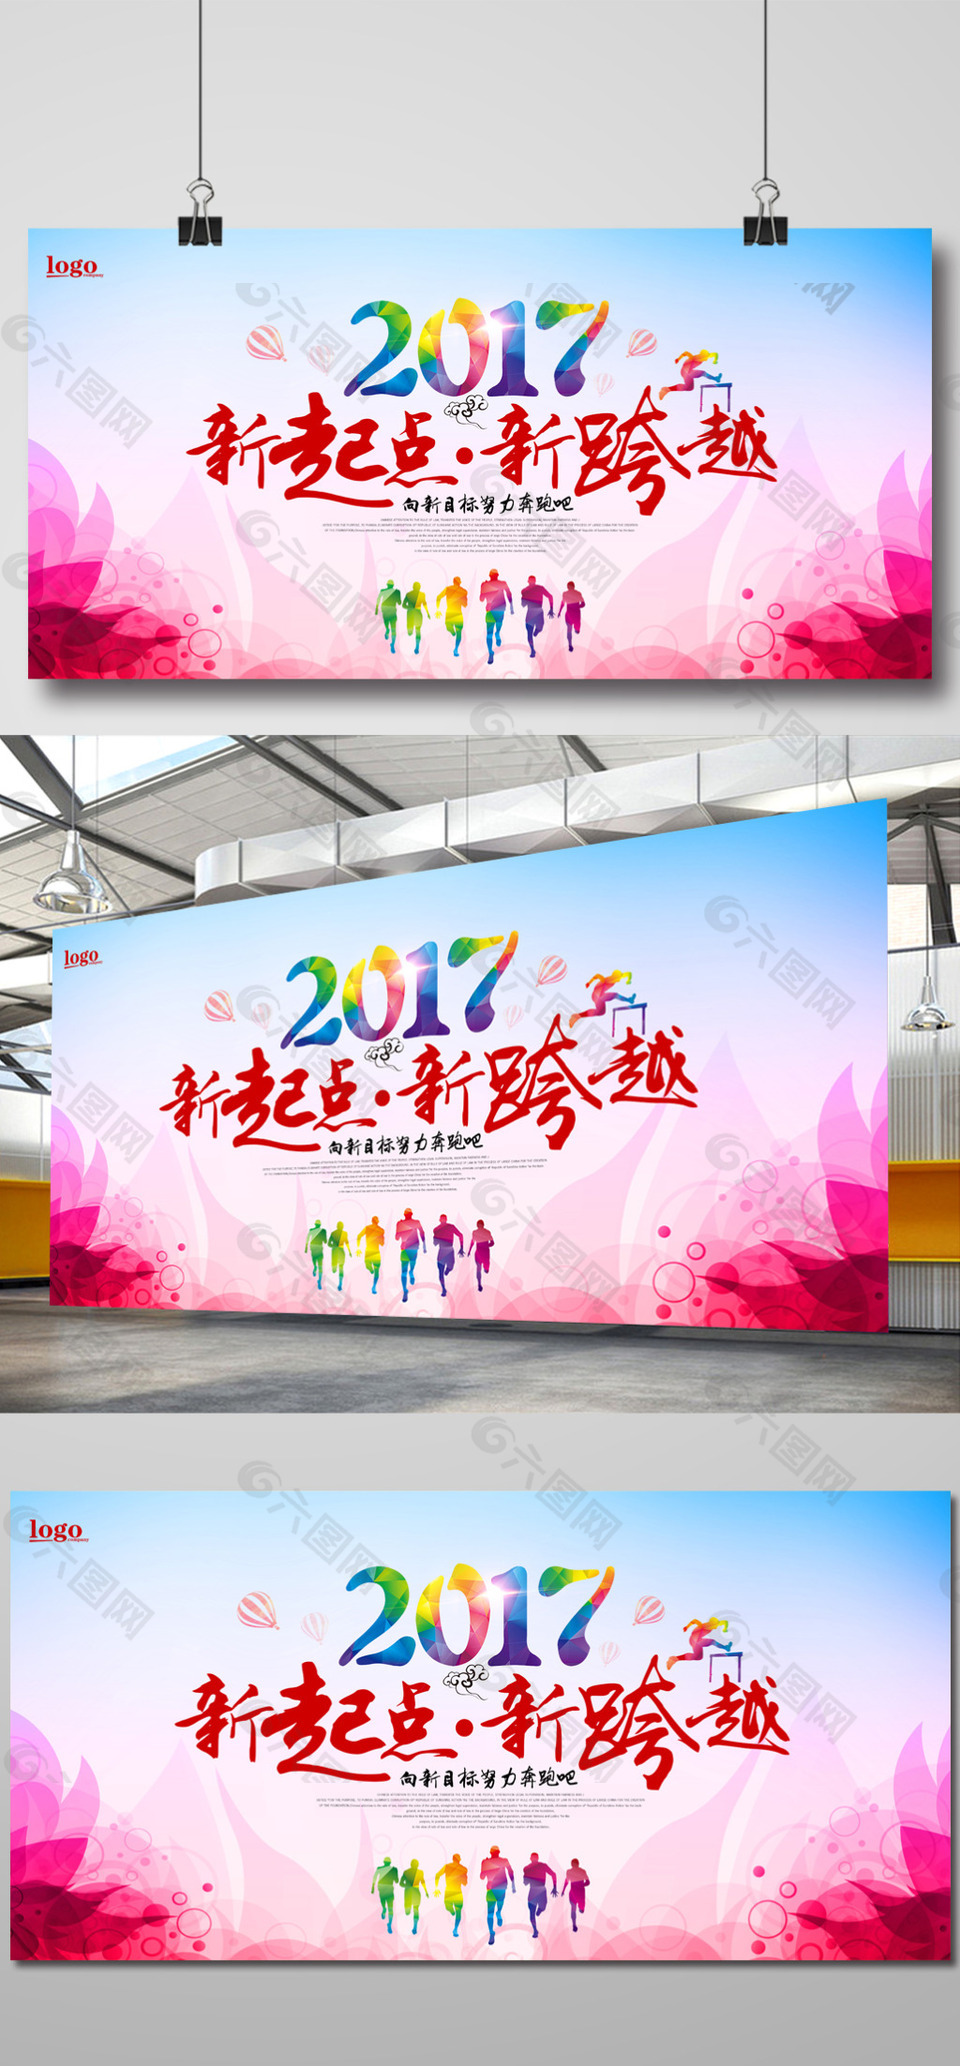 2017迎战鸡年展板海报免费下载